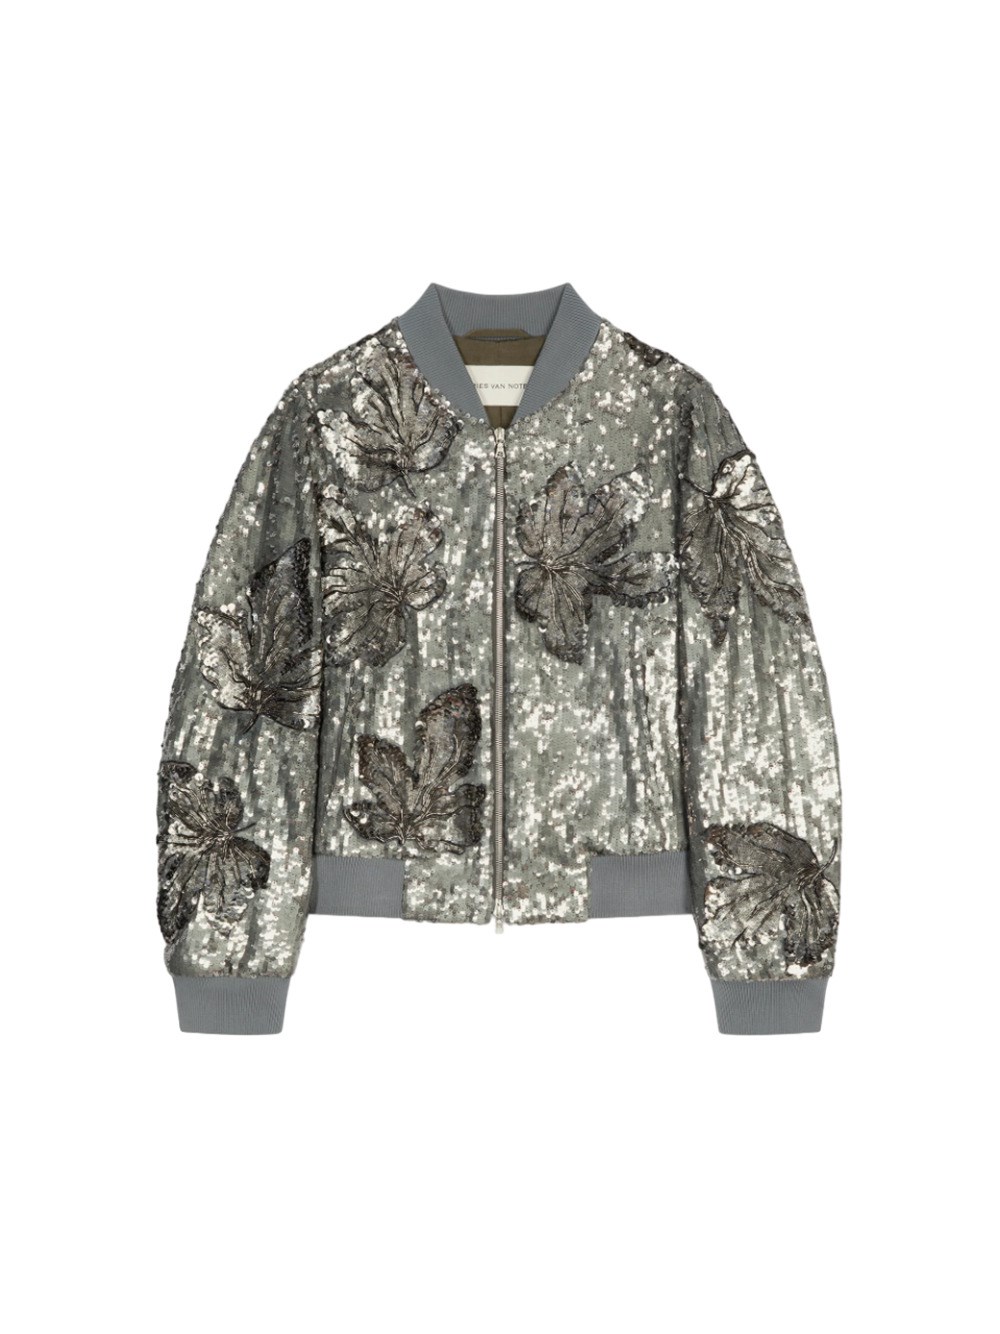 Dries Van Noten Slim Fit Bomber Jacket With Sequin Decoration. In Metallic